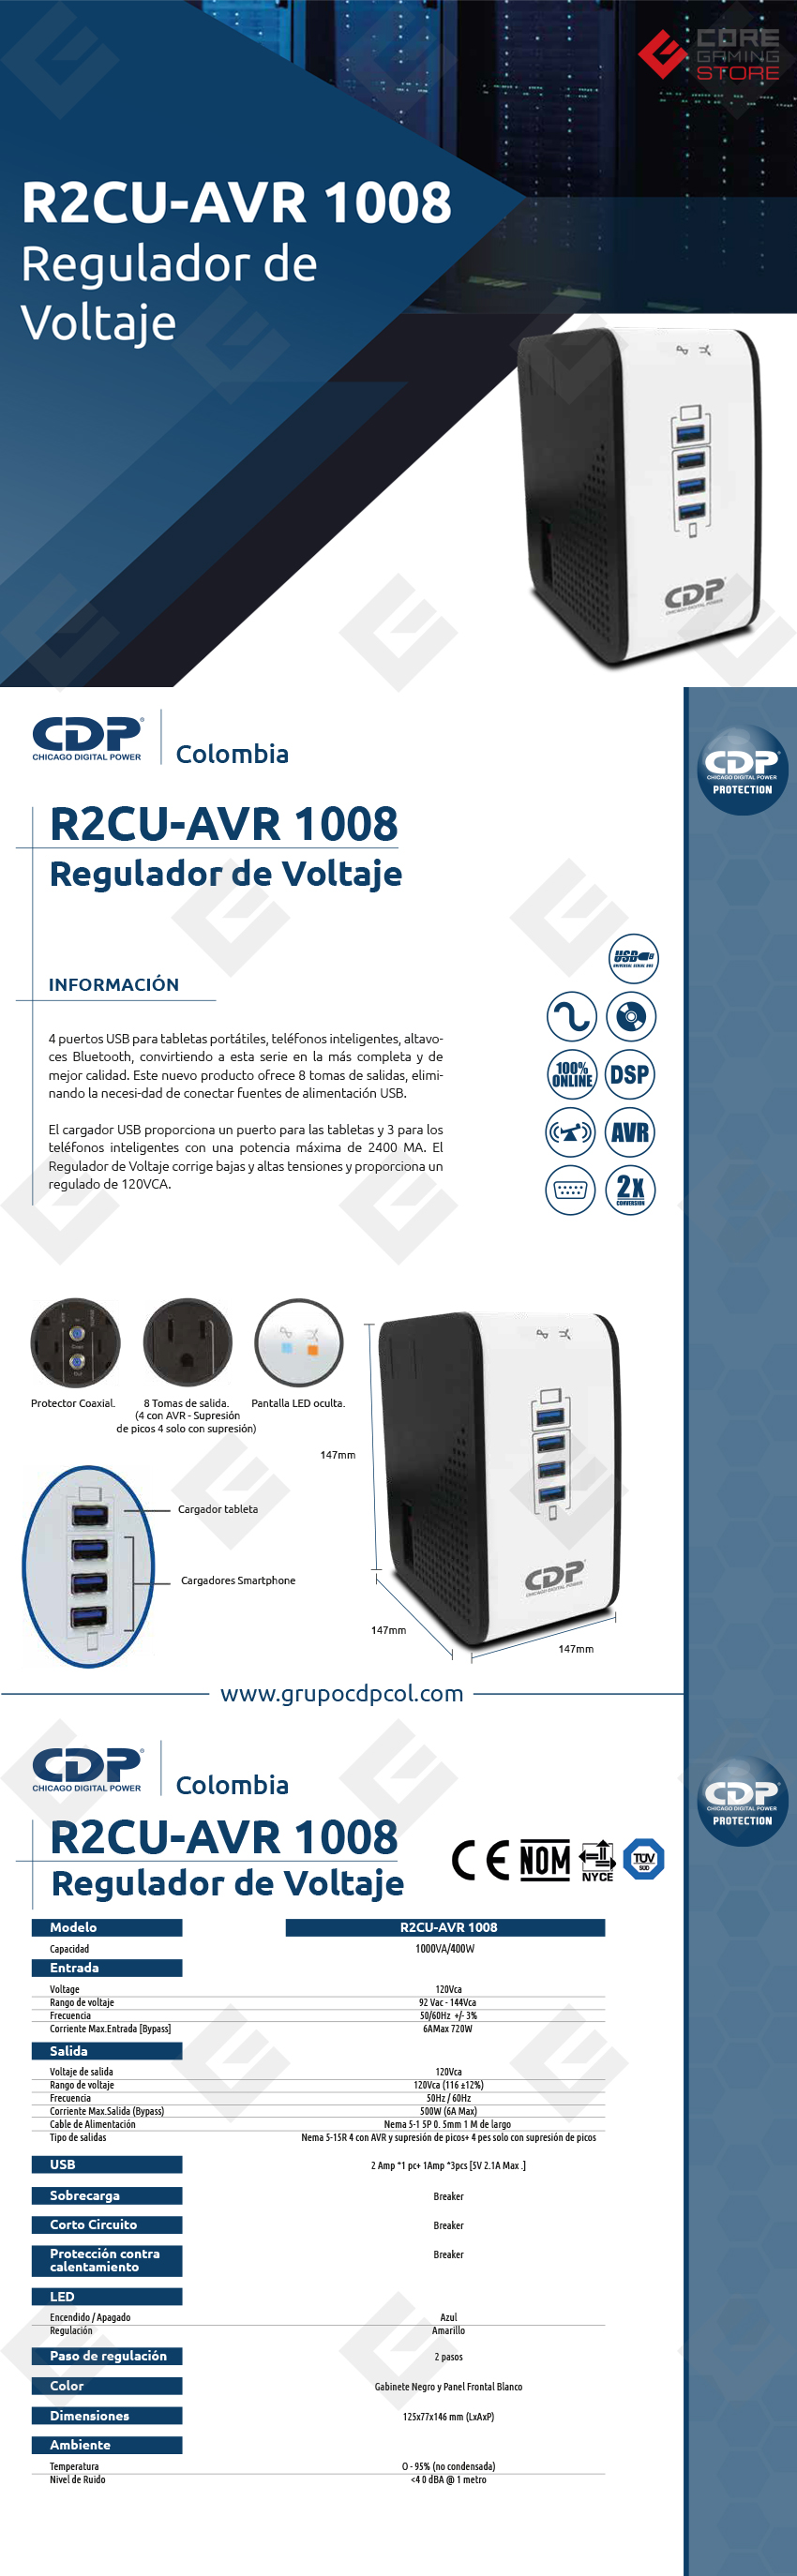 Regulador CDP R2CU-AVR 1008, 1000VA, 400W, 8 Contactos